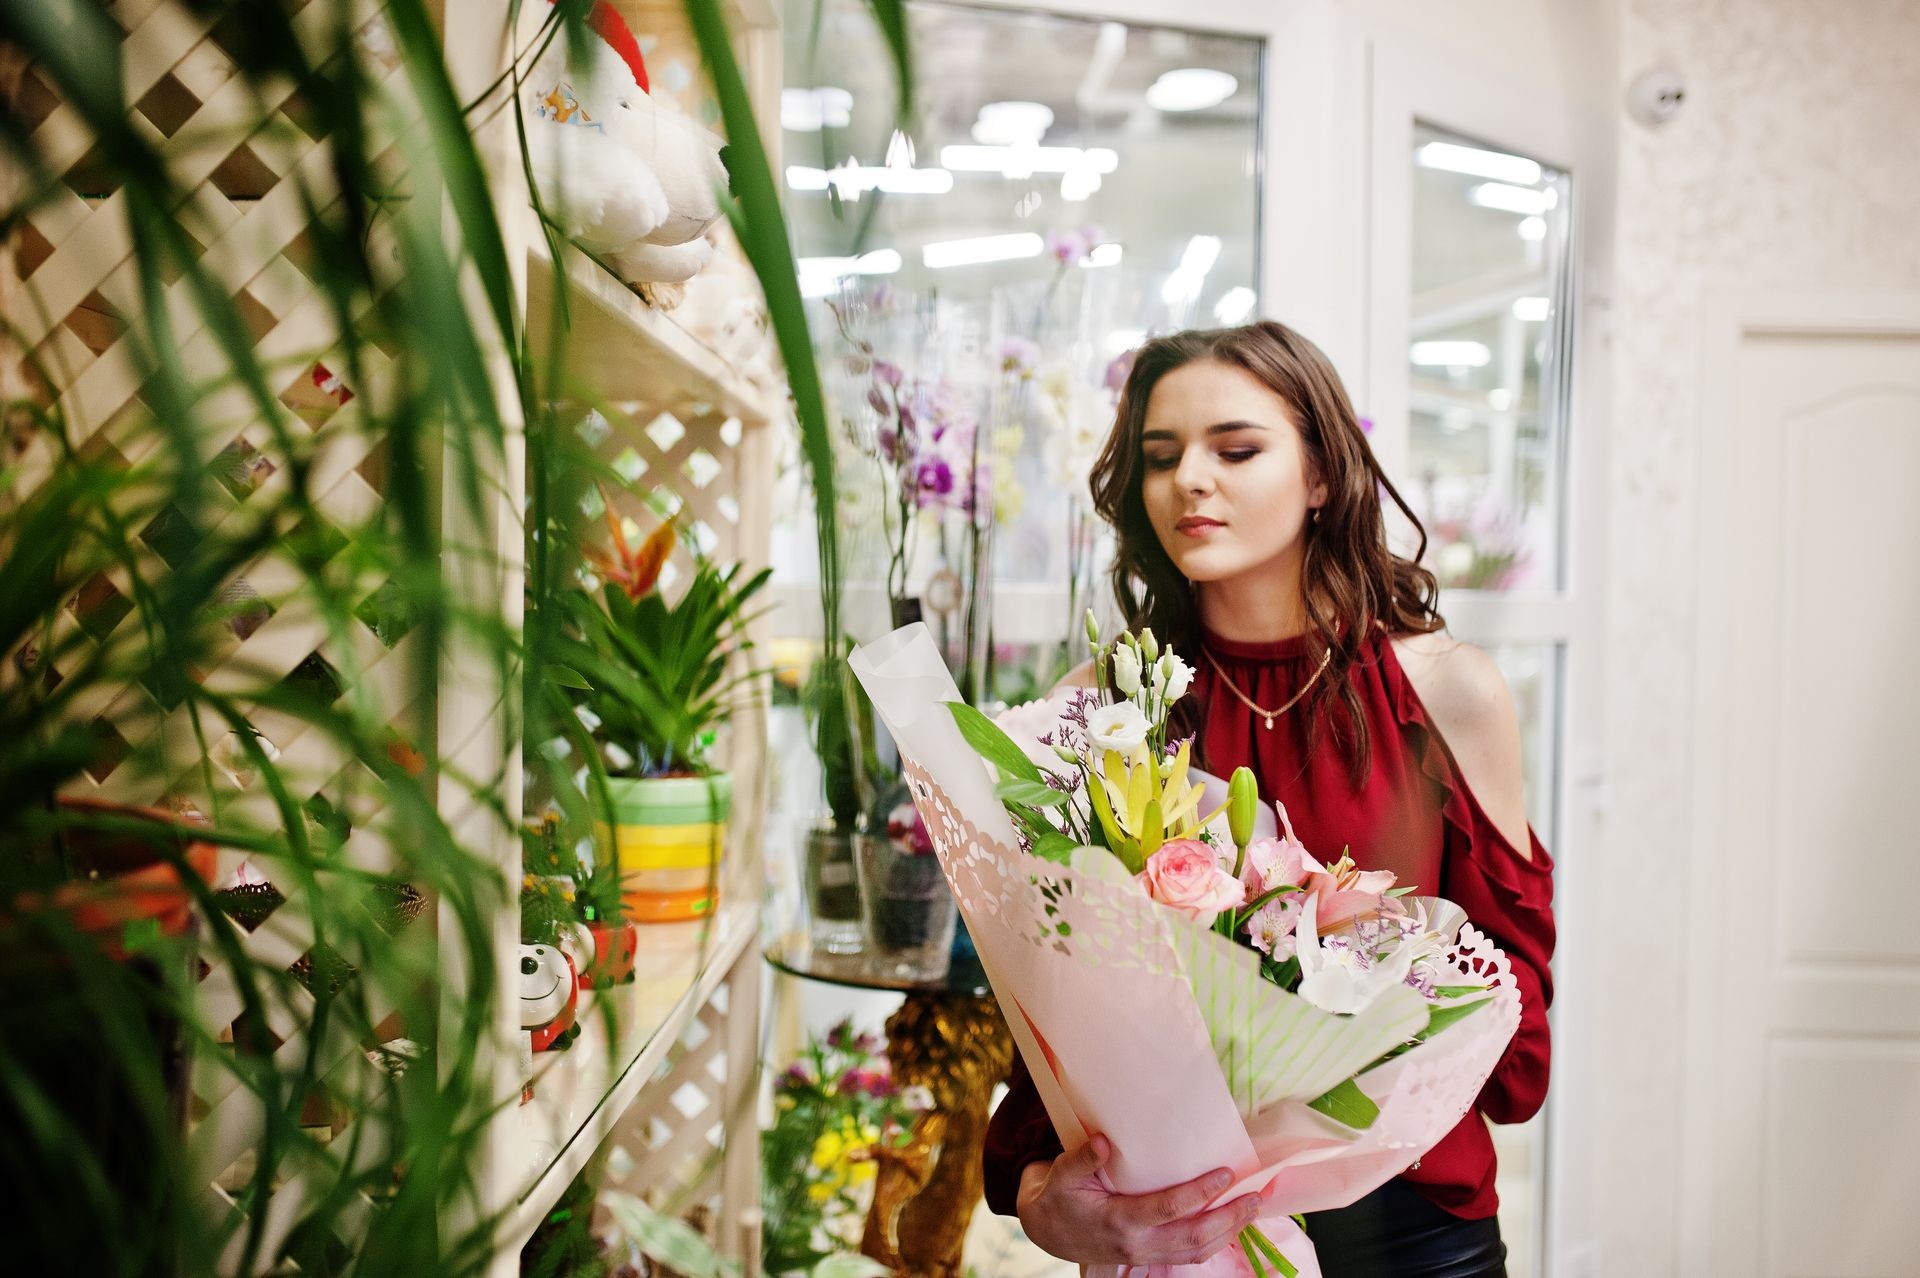 Brunette girl in red buy flowers at flower store.